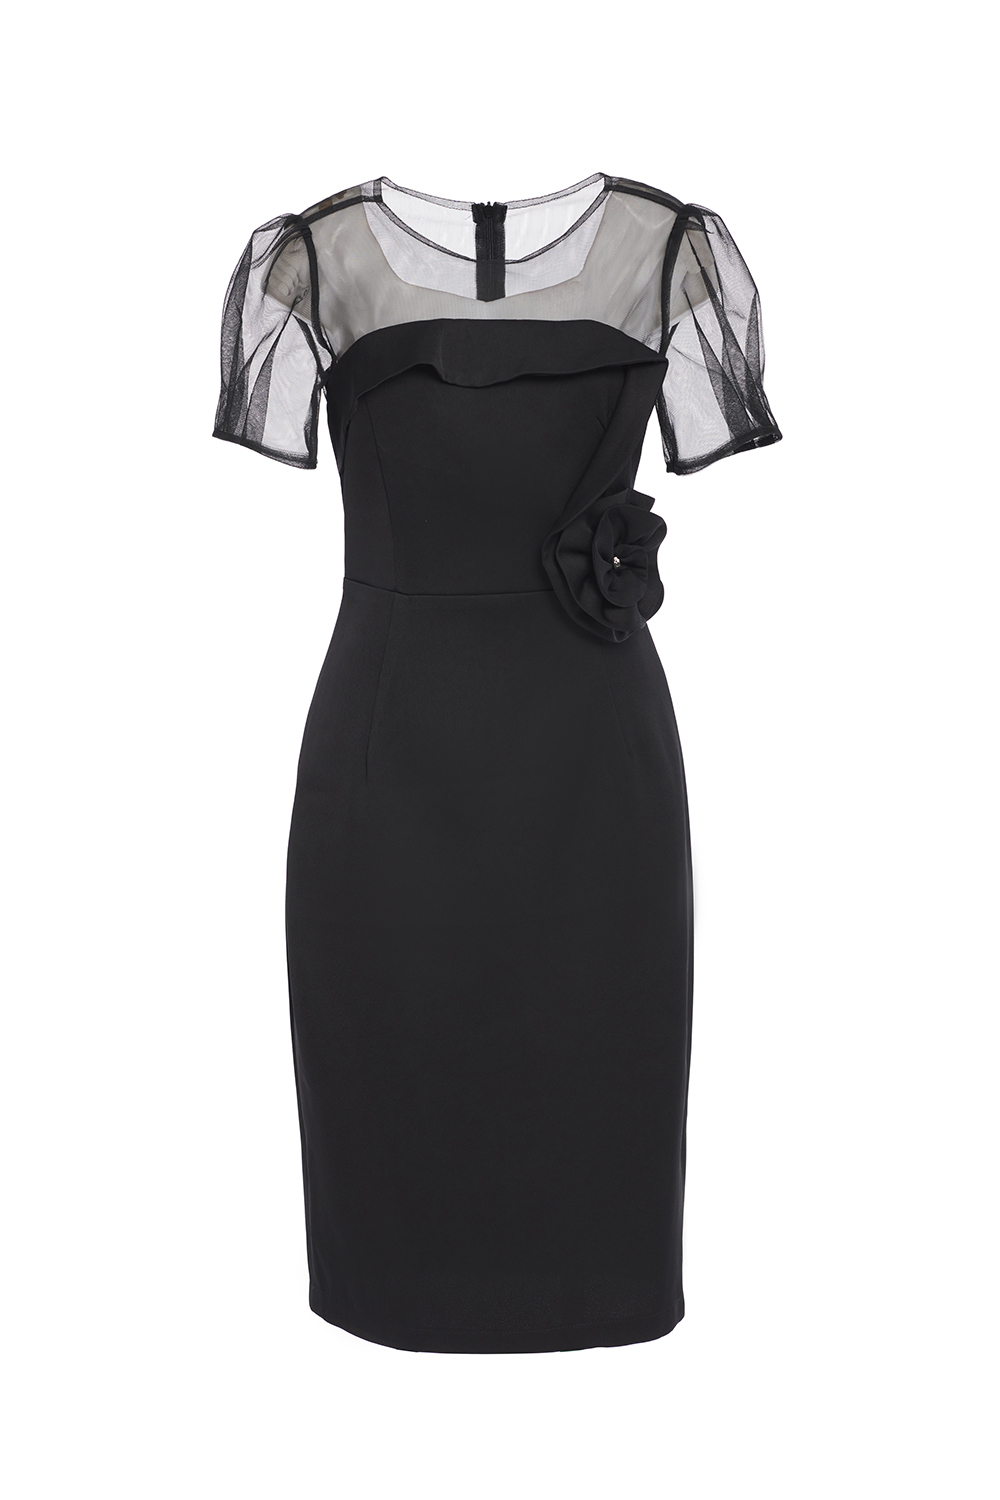 Đầm đen ôm body phối lưới đính nơ eo KK10306  Thời trang công sở KK  Fashion